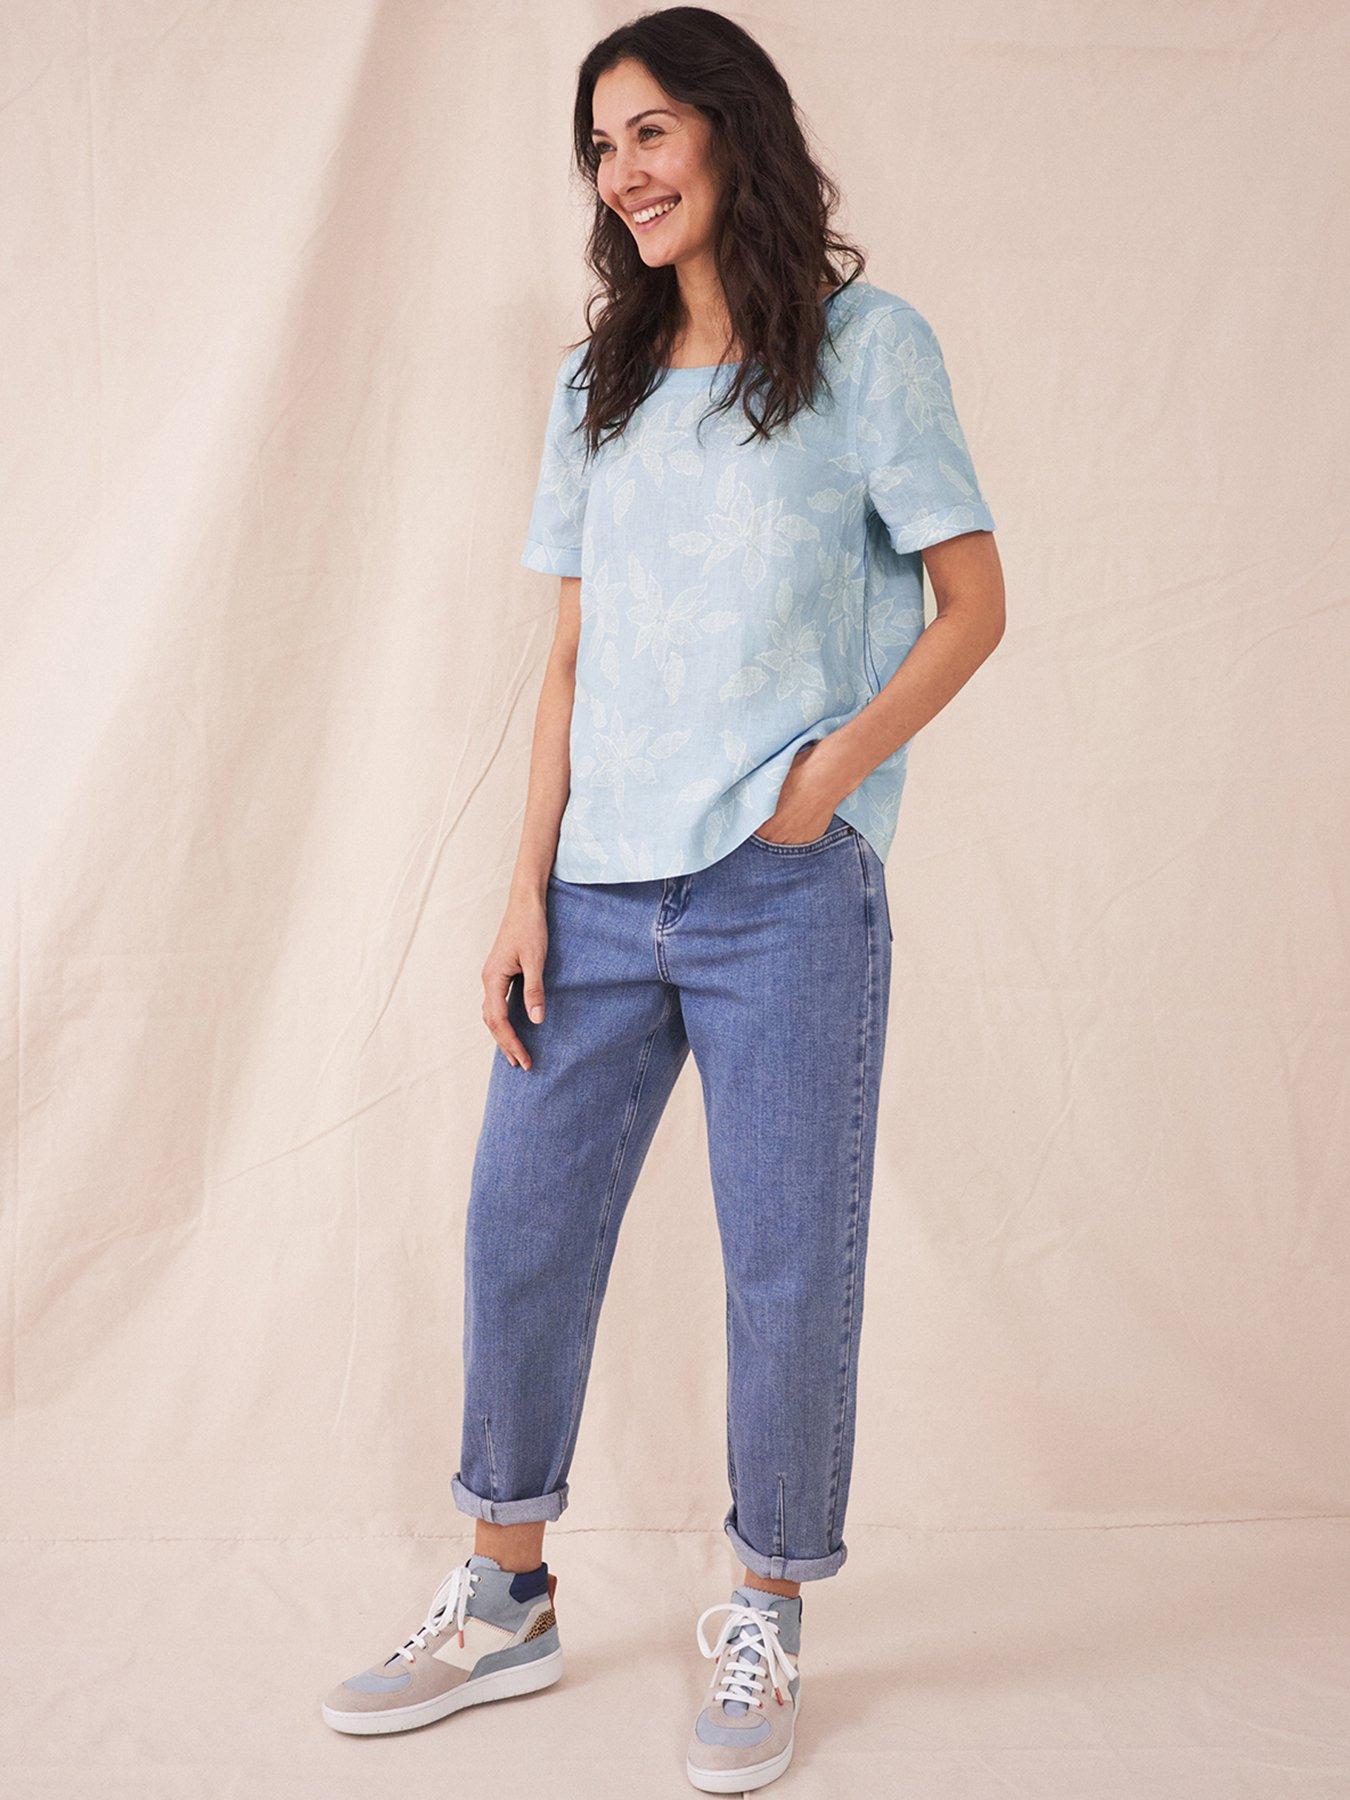 Blouses & shirts Edie Linen Top -blue